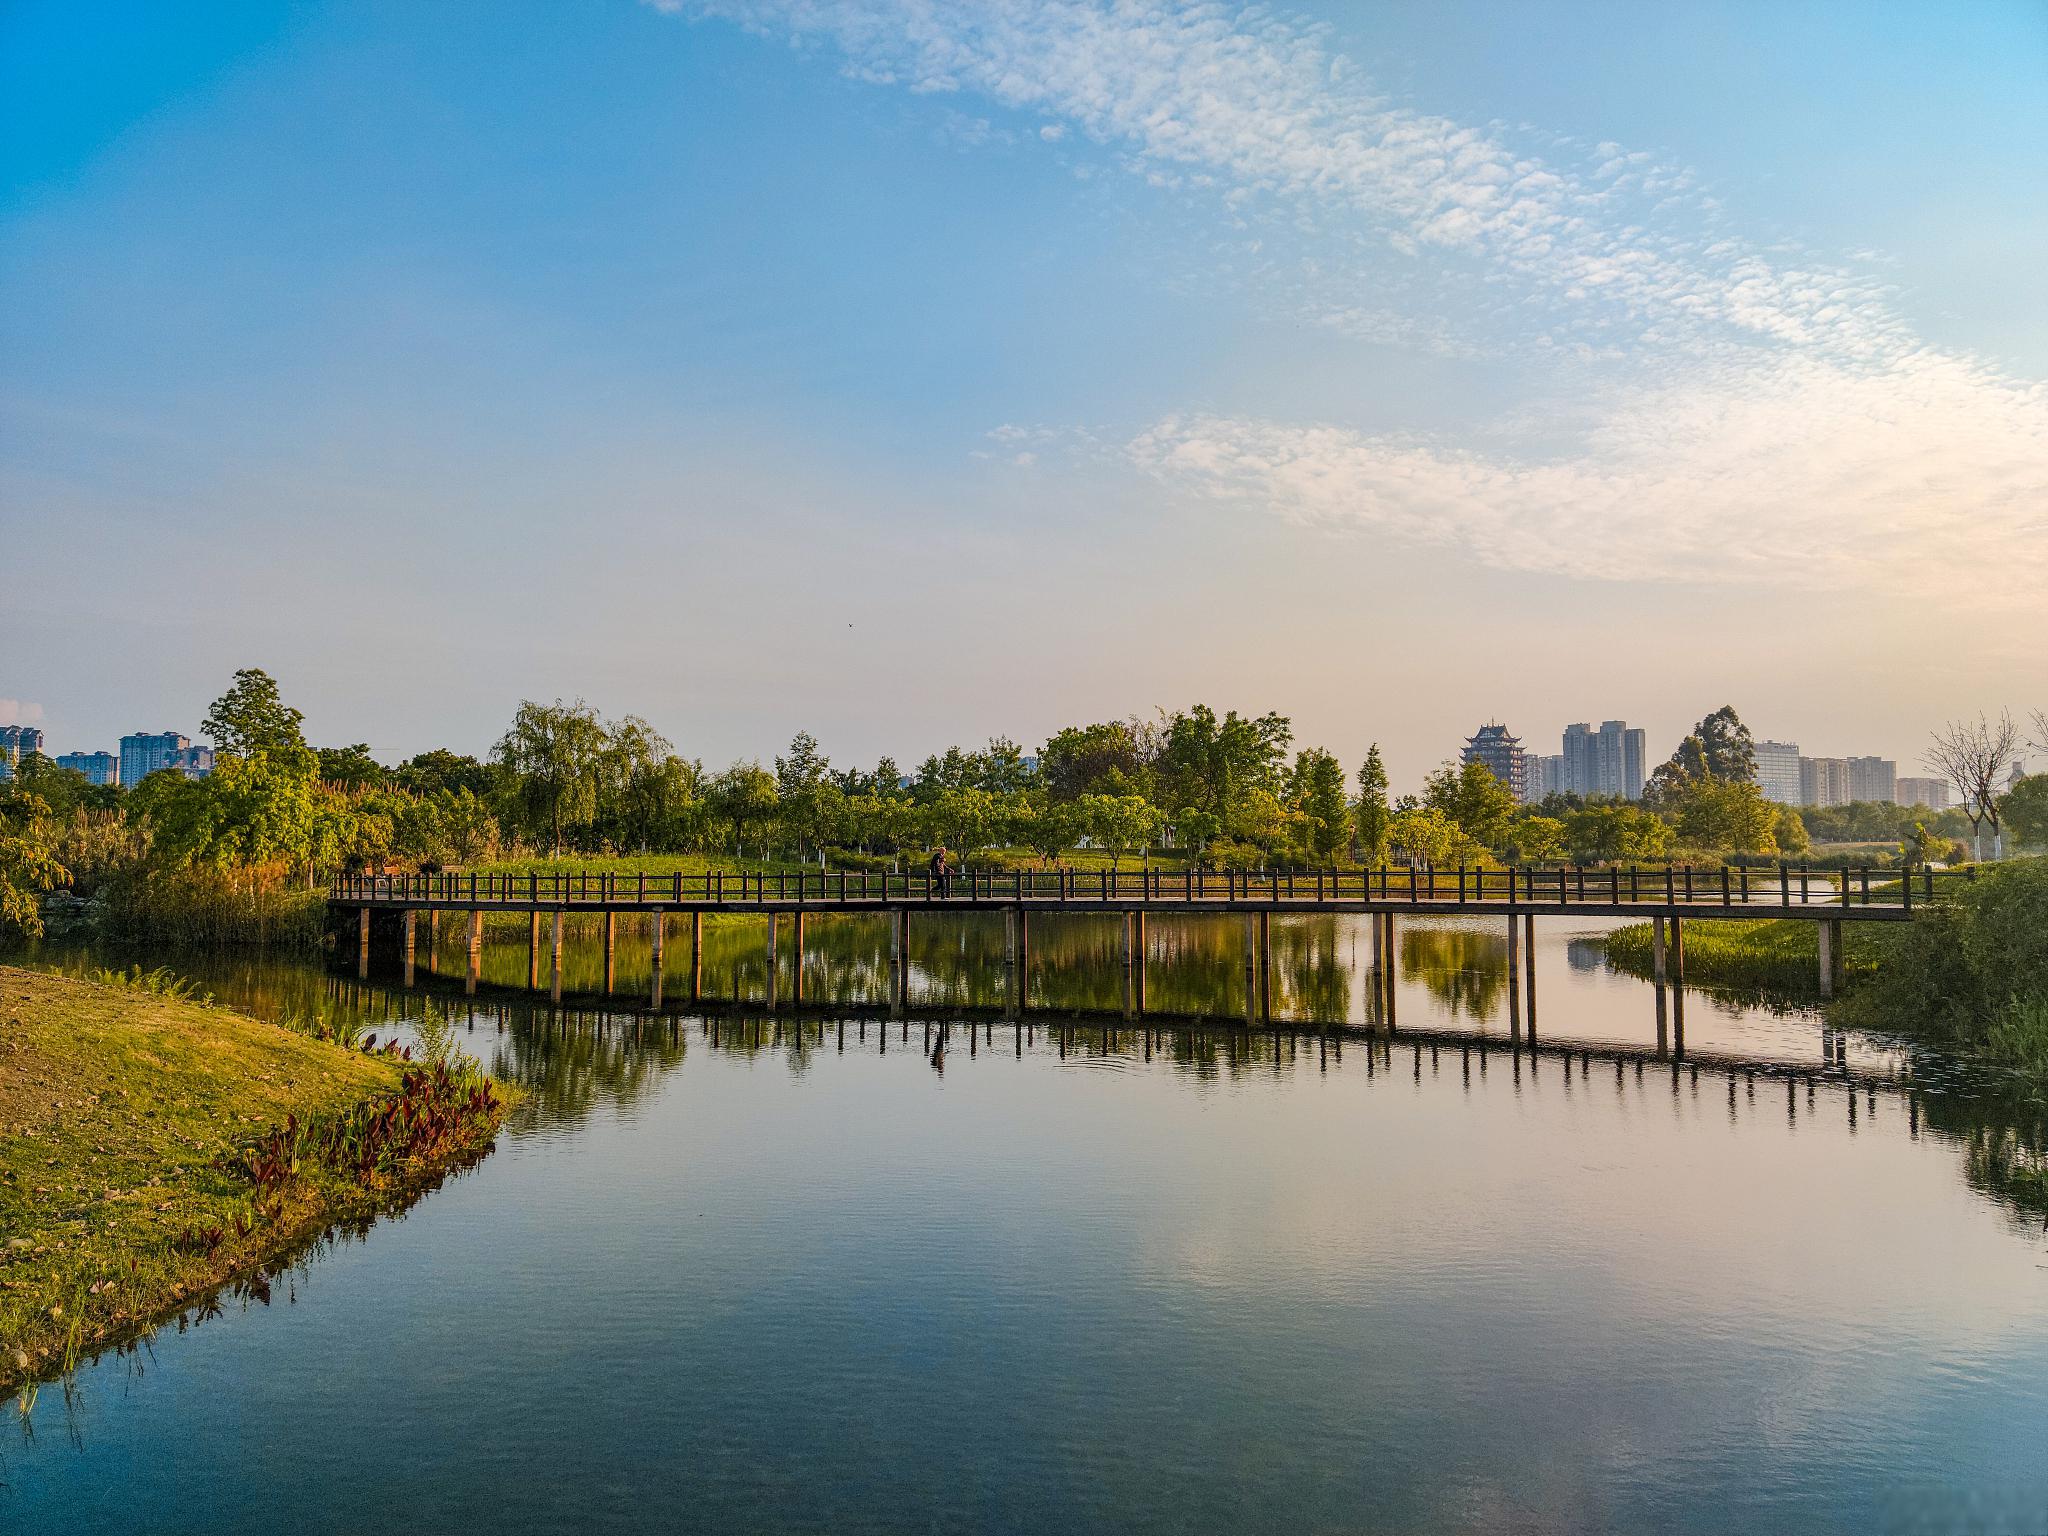 五里湖湿地公园:自然的瑰宝,都市的绿肺 在繁华的都市中,隐藏着一处